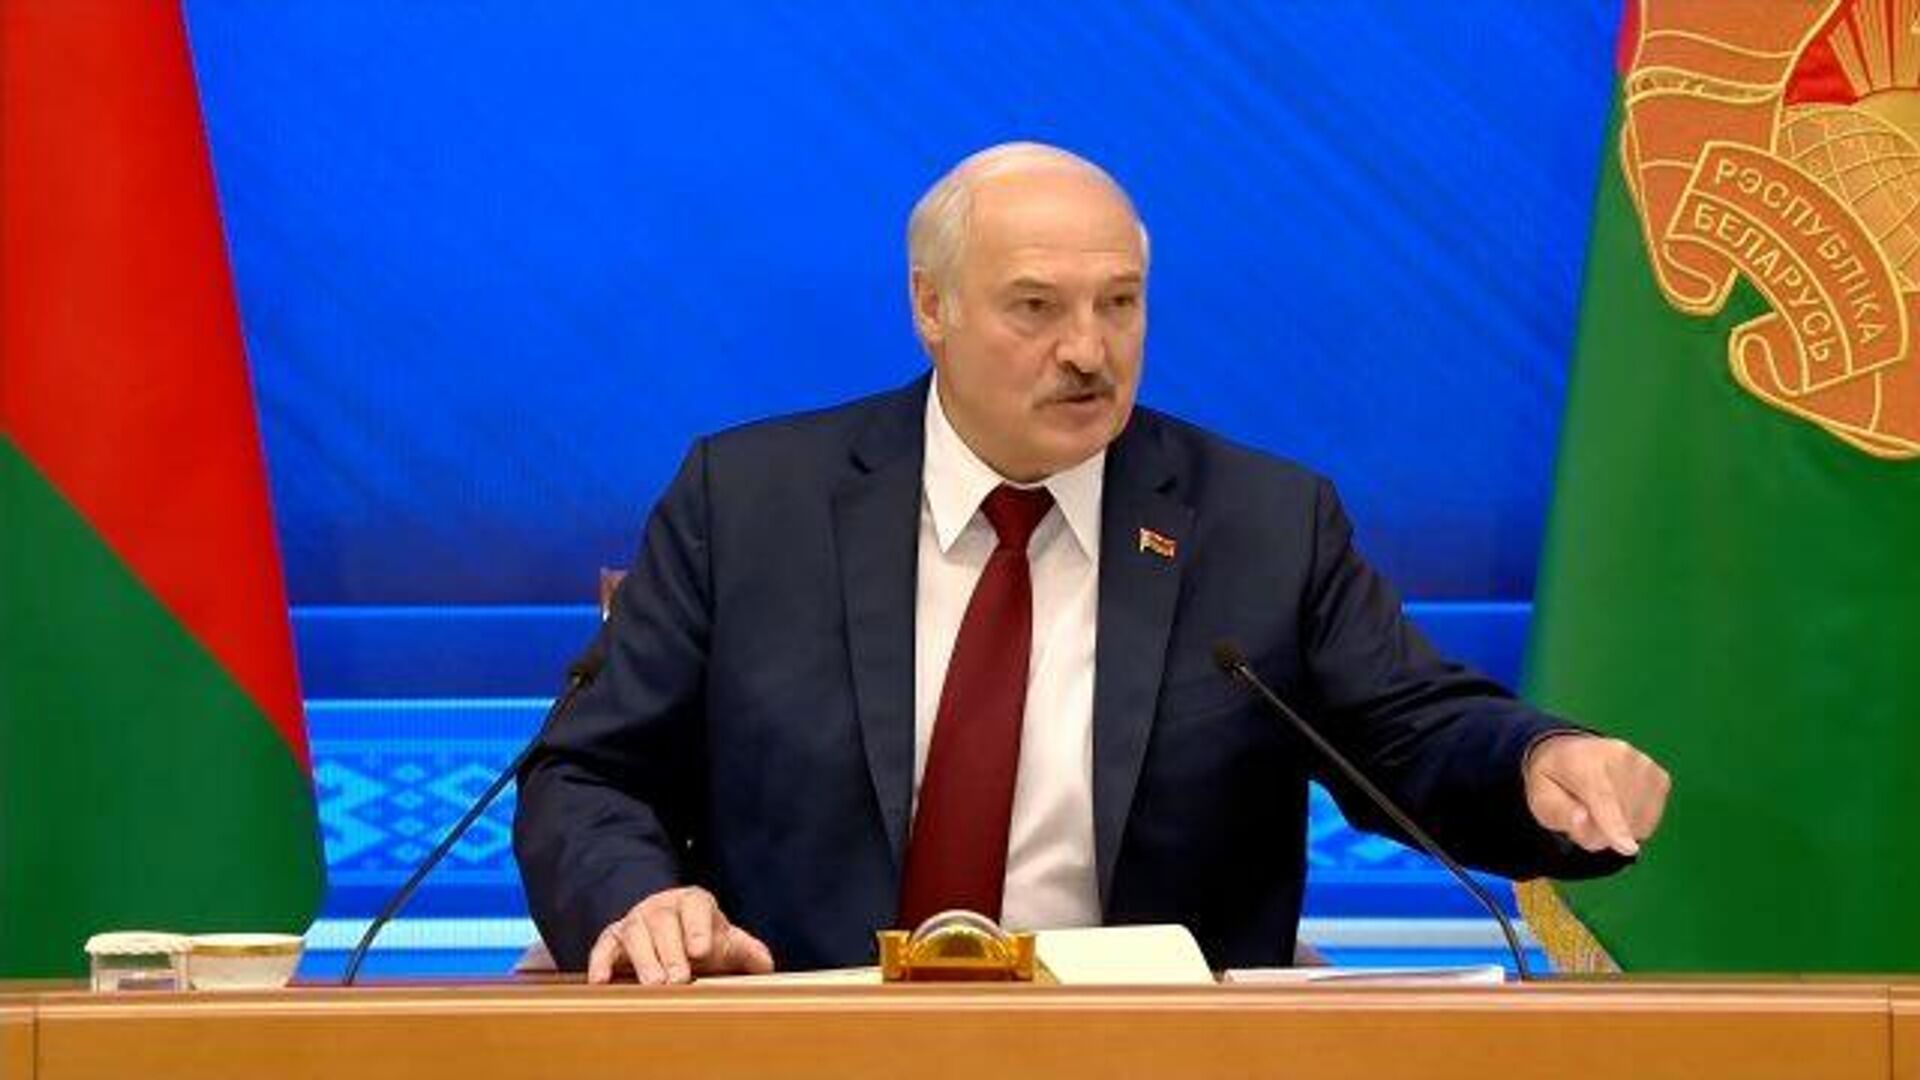 Не надо гадать, — Лукашенко ответил на вопрос, когда уйдет с поста президента - РИА Новости, 1920, 10.08.2021